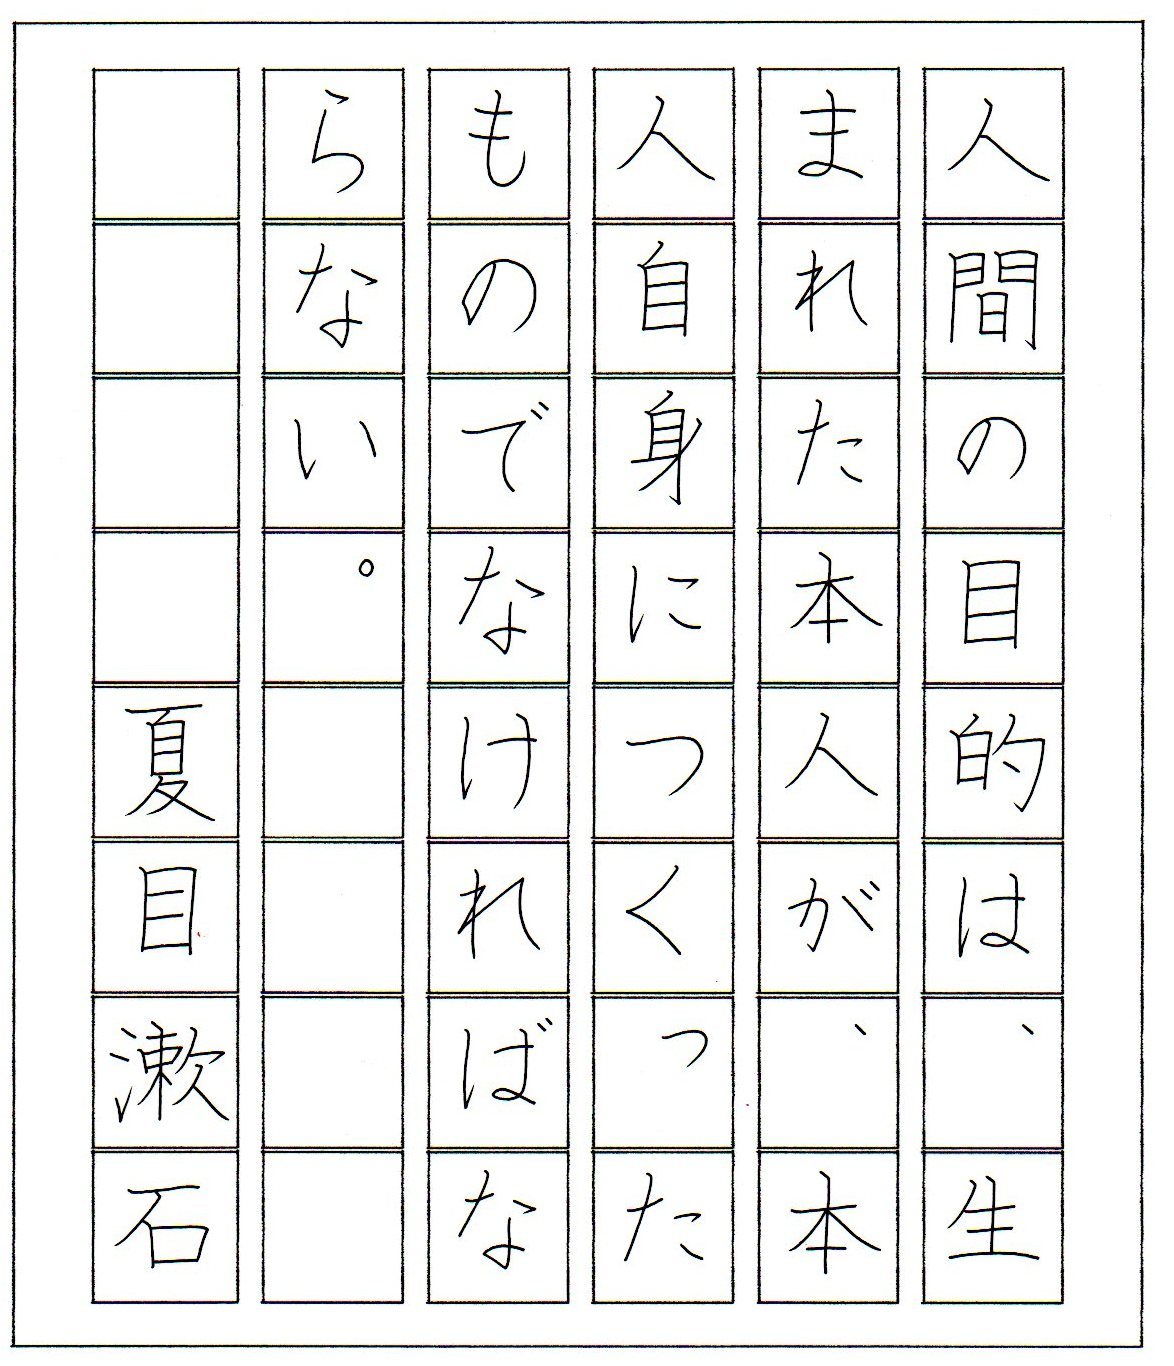 ペン字無料手本 夏目漱石の名言・1 | 書道習字ペン字お手本